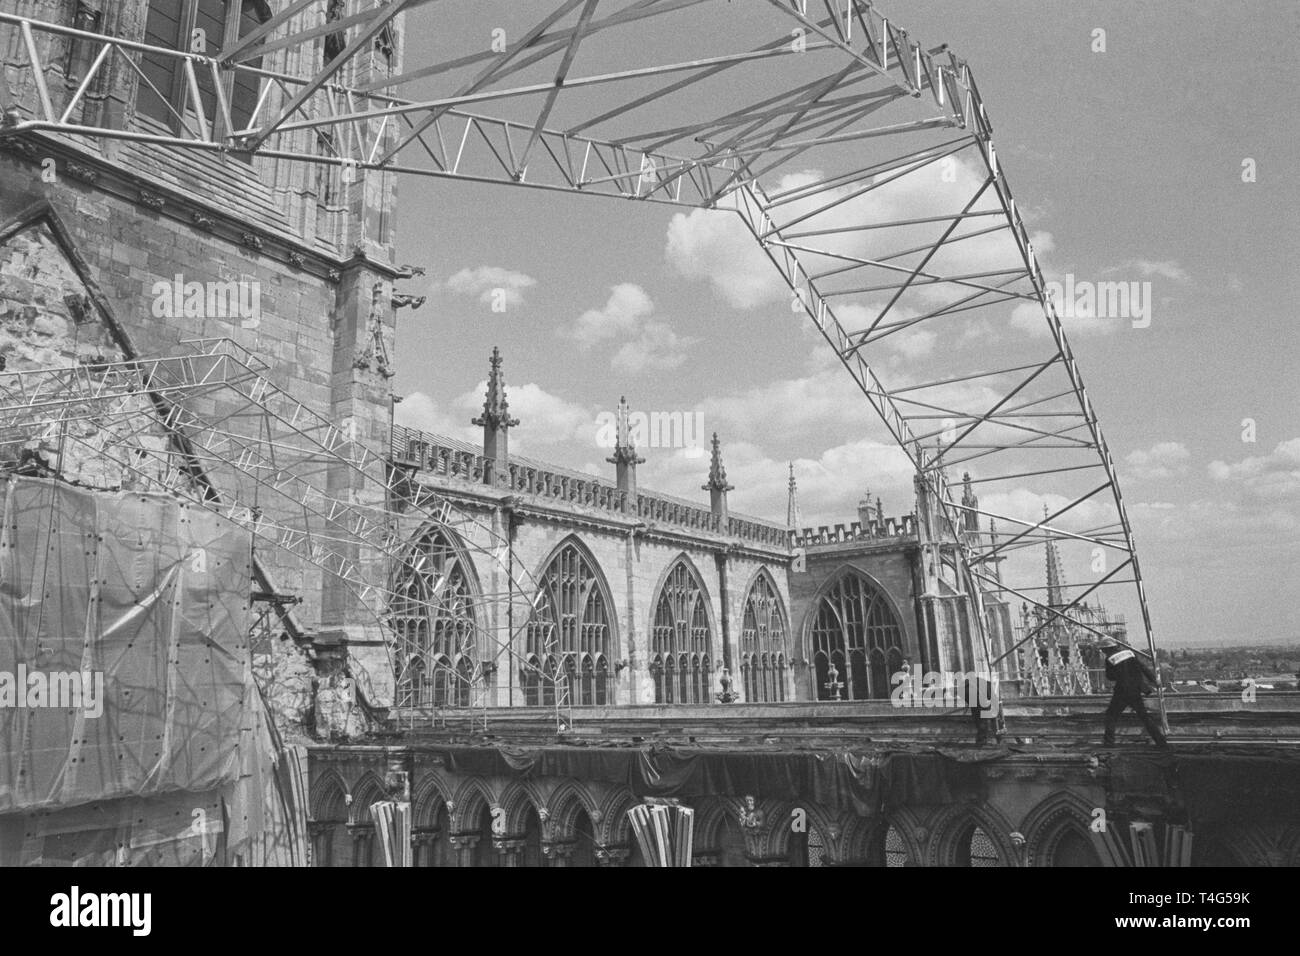 Les courbes en aluminium moderne sur fond de la cathédrale de York, où des ouvriers déplacé une structure temporaire en position.La première de deux toits en aluminium temporaire sont en cours d'installation sur le croisillon sud après l'incendie. Banque D'Images